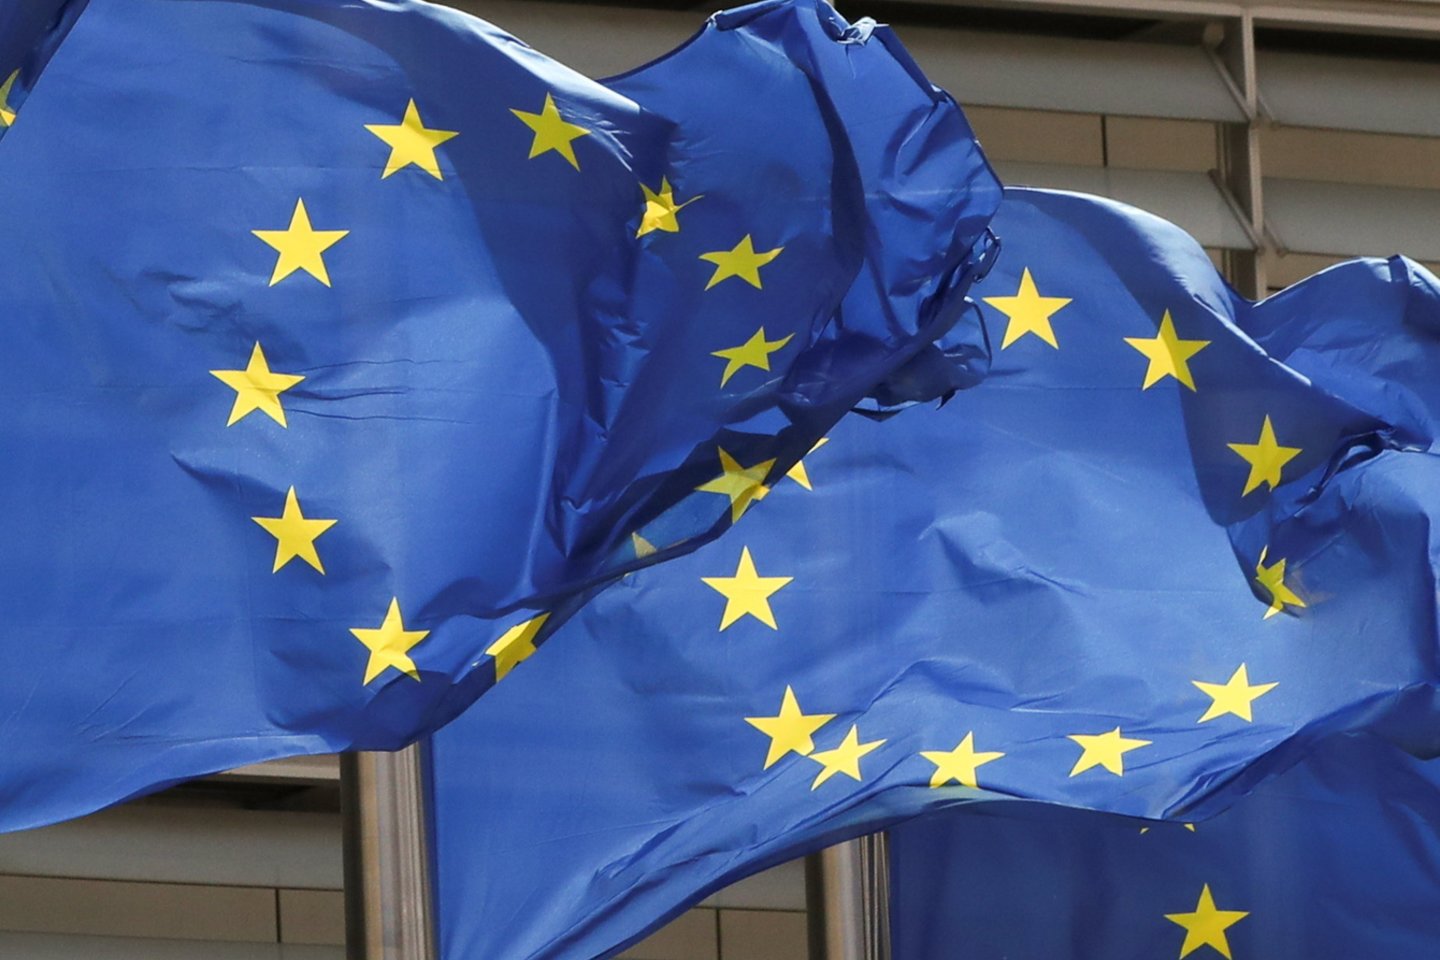  Europos Parlamentas birželį planuoja atnaujinti posėdžius Strasbūre.  <br>Reuters/Scanpix nuotr.